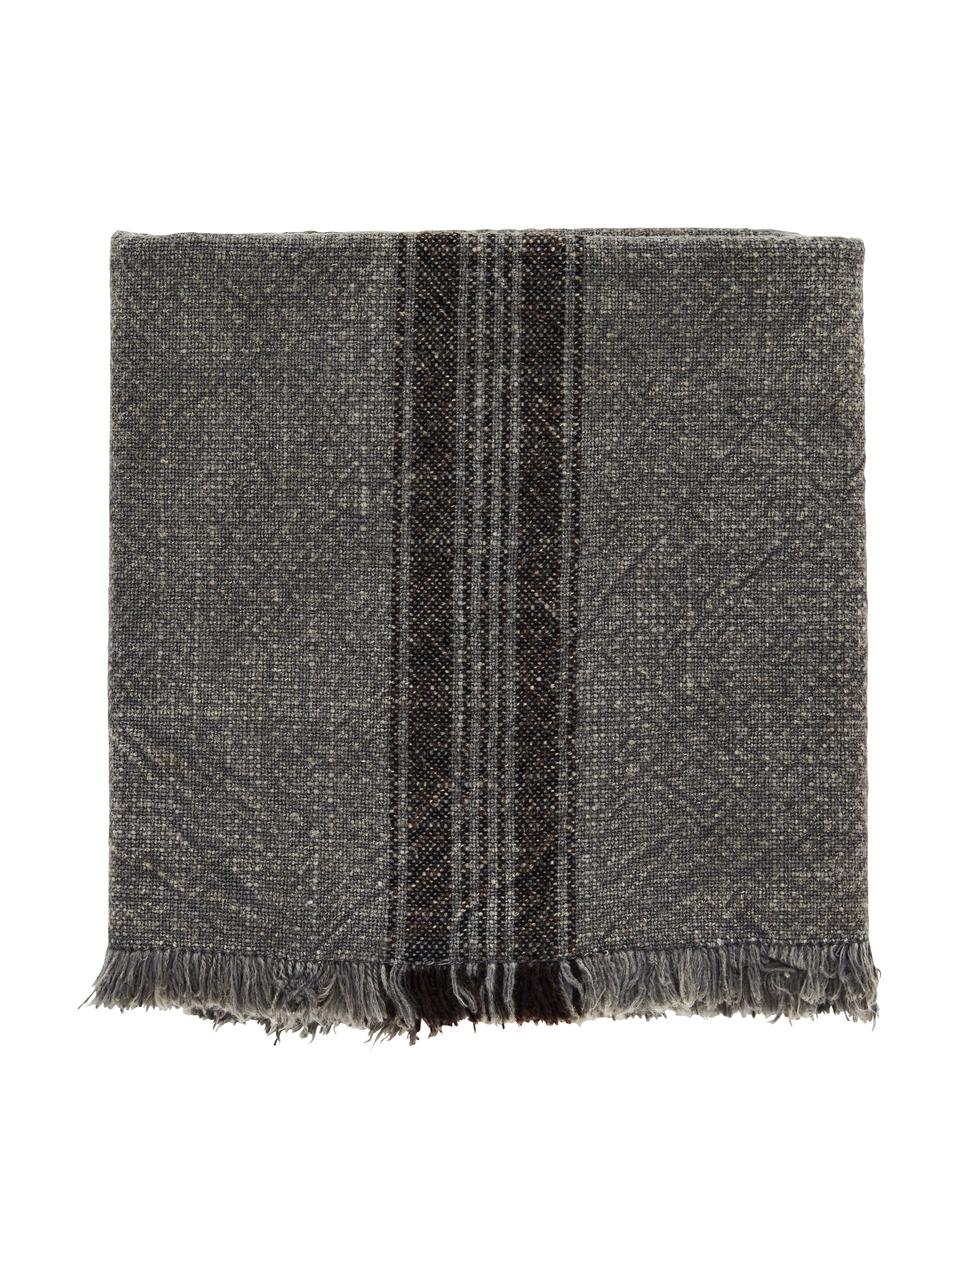 Ręcznik kuchenny z bawełny Ripo, 2 szt., 100% bawełna, Ciemny szary, melanżowy, czarny, S 50 x D 70 cm